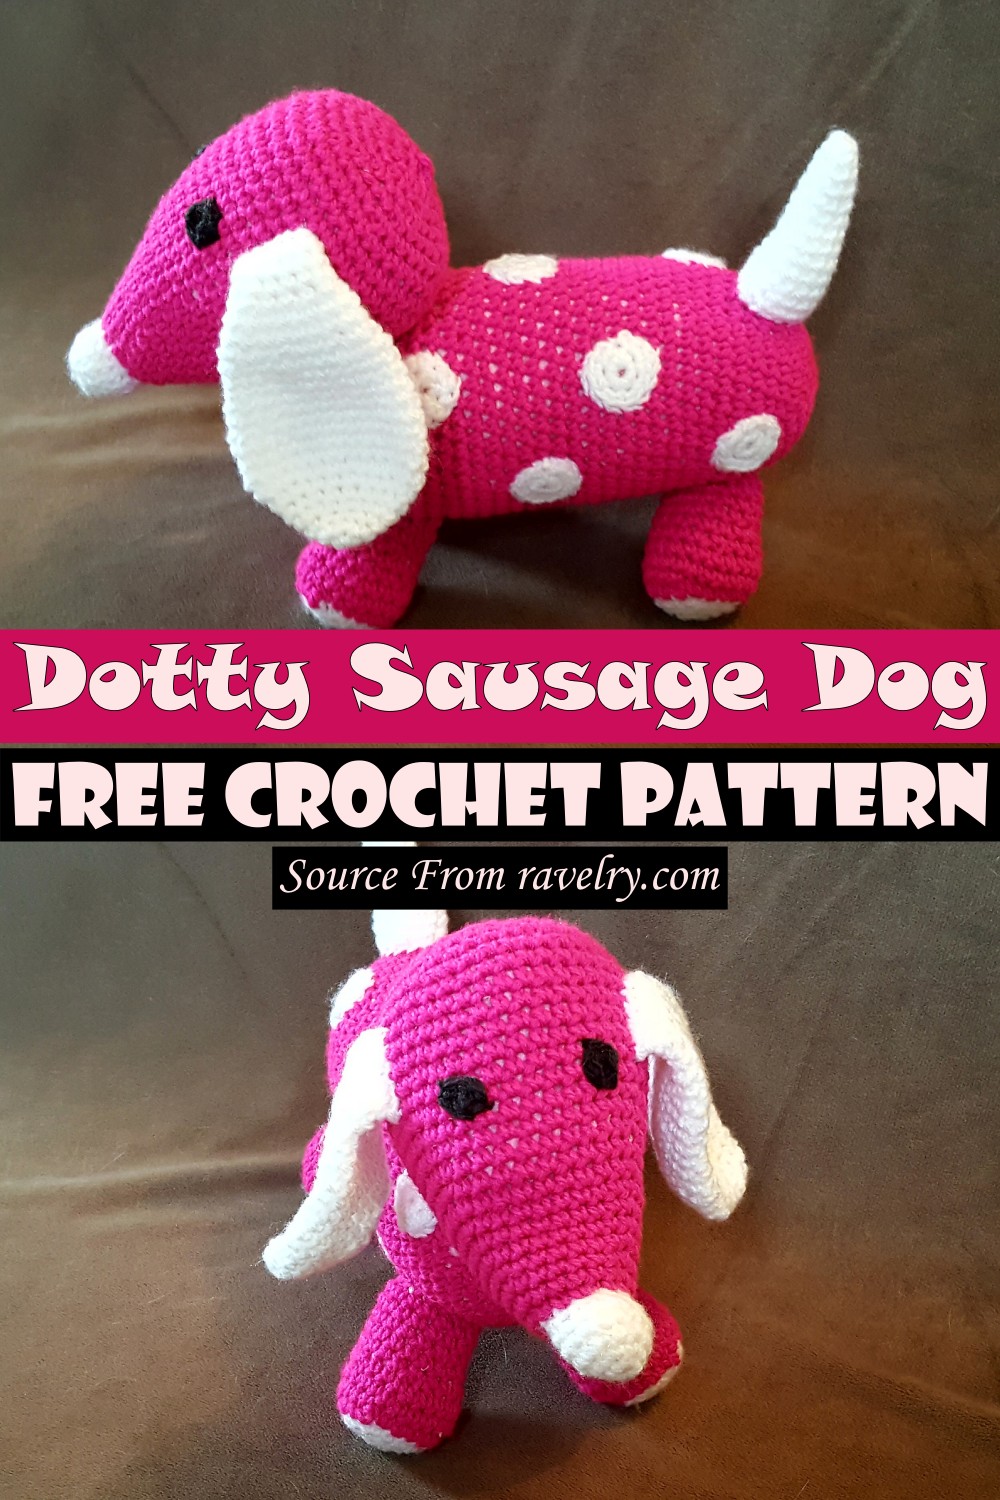 Free Crochet Dotty Sausage Dog Pattern